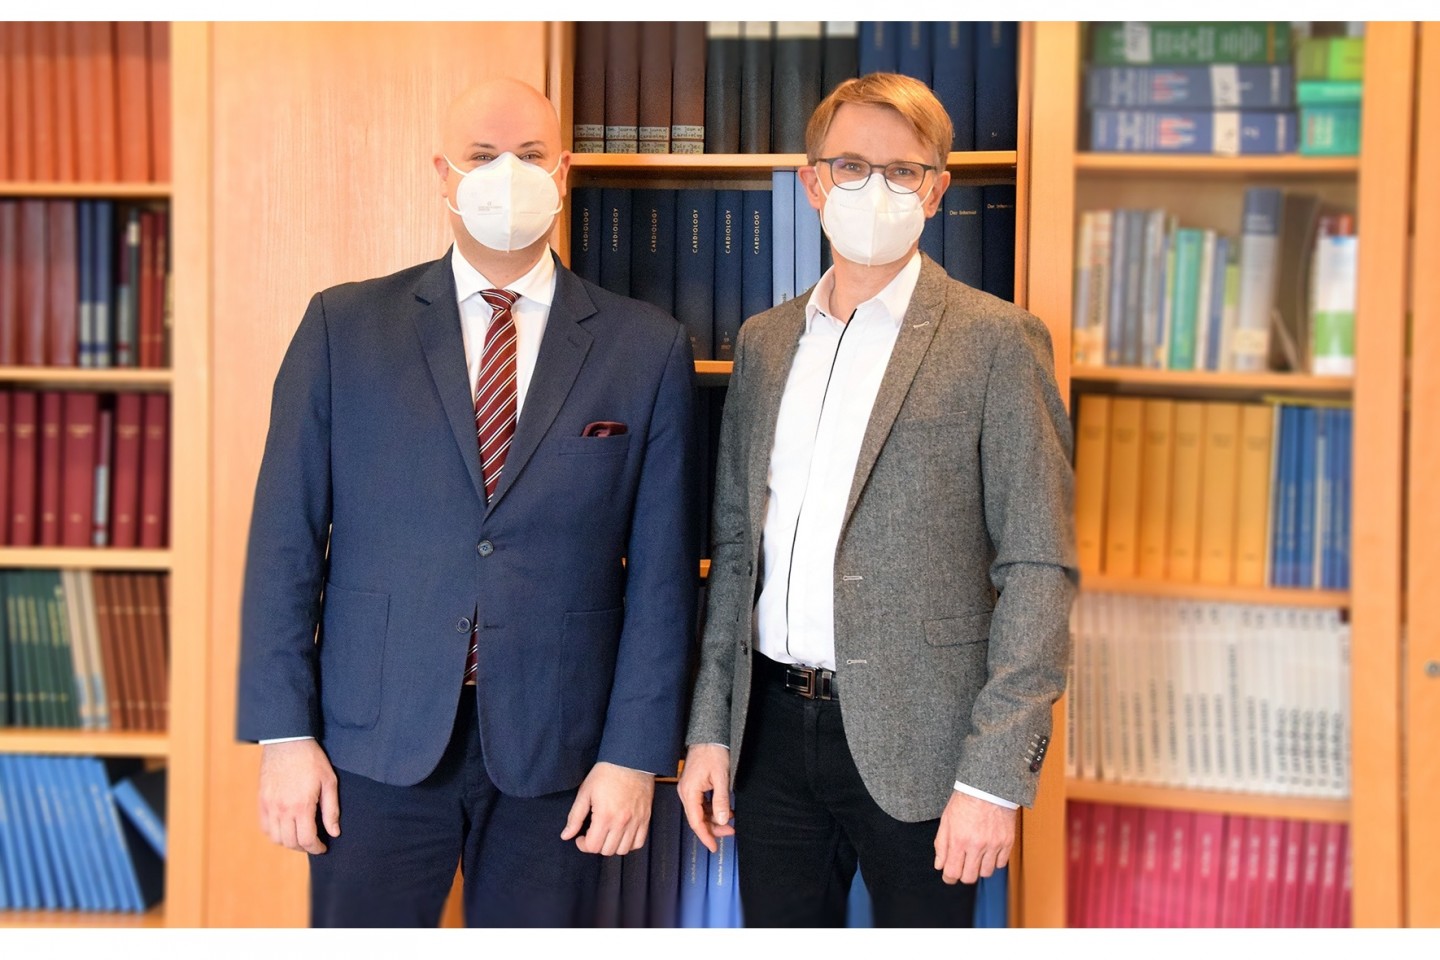 Grzegorz Krzyzowski beerbt Dr. med. Markus Wrenger als Chefarzt der Abteilung Innere Medizin in der Caspar Heinrich Klinik